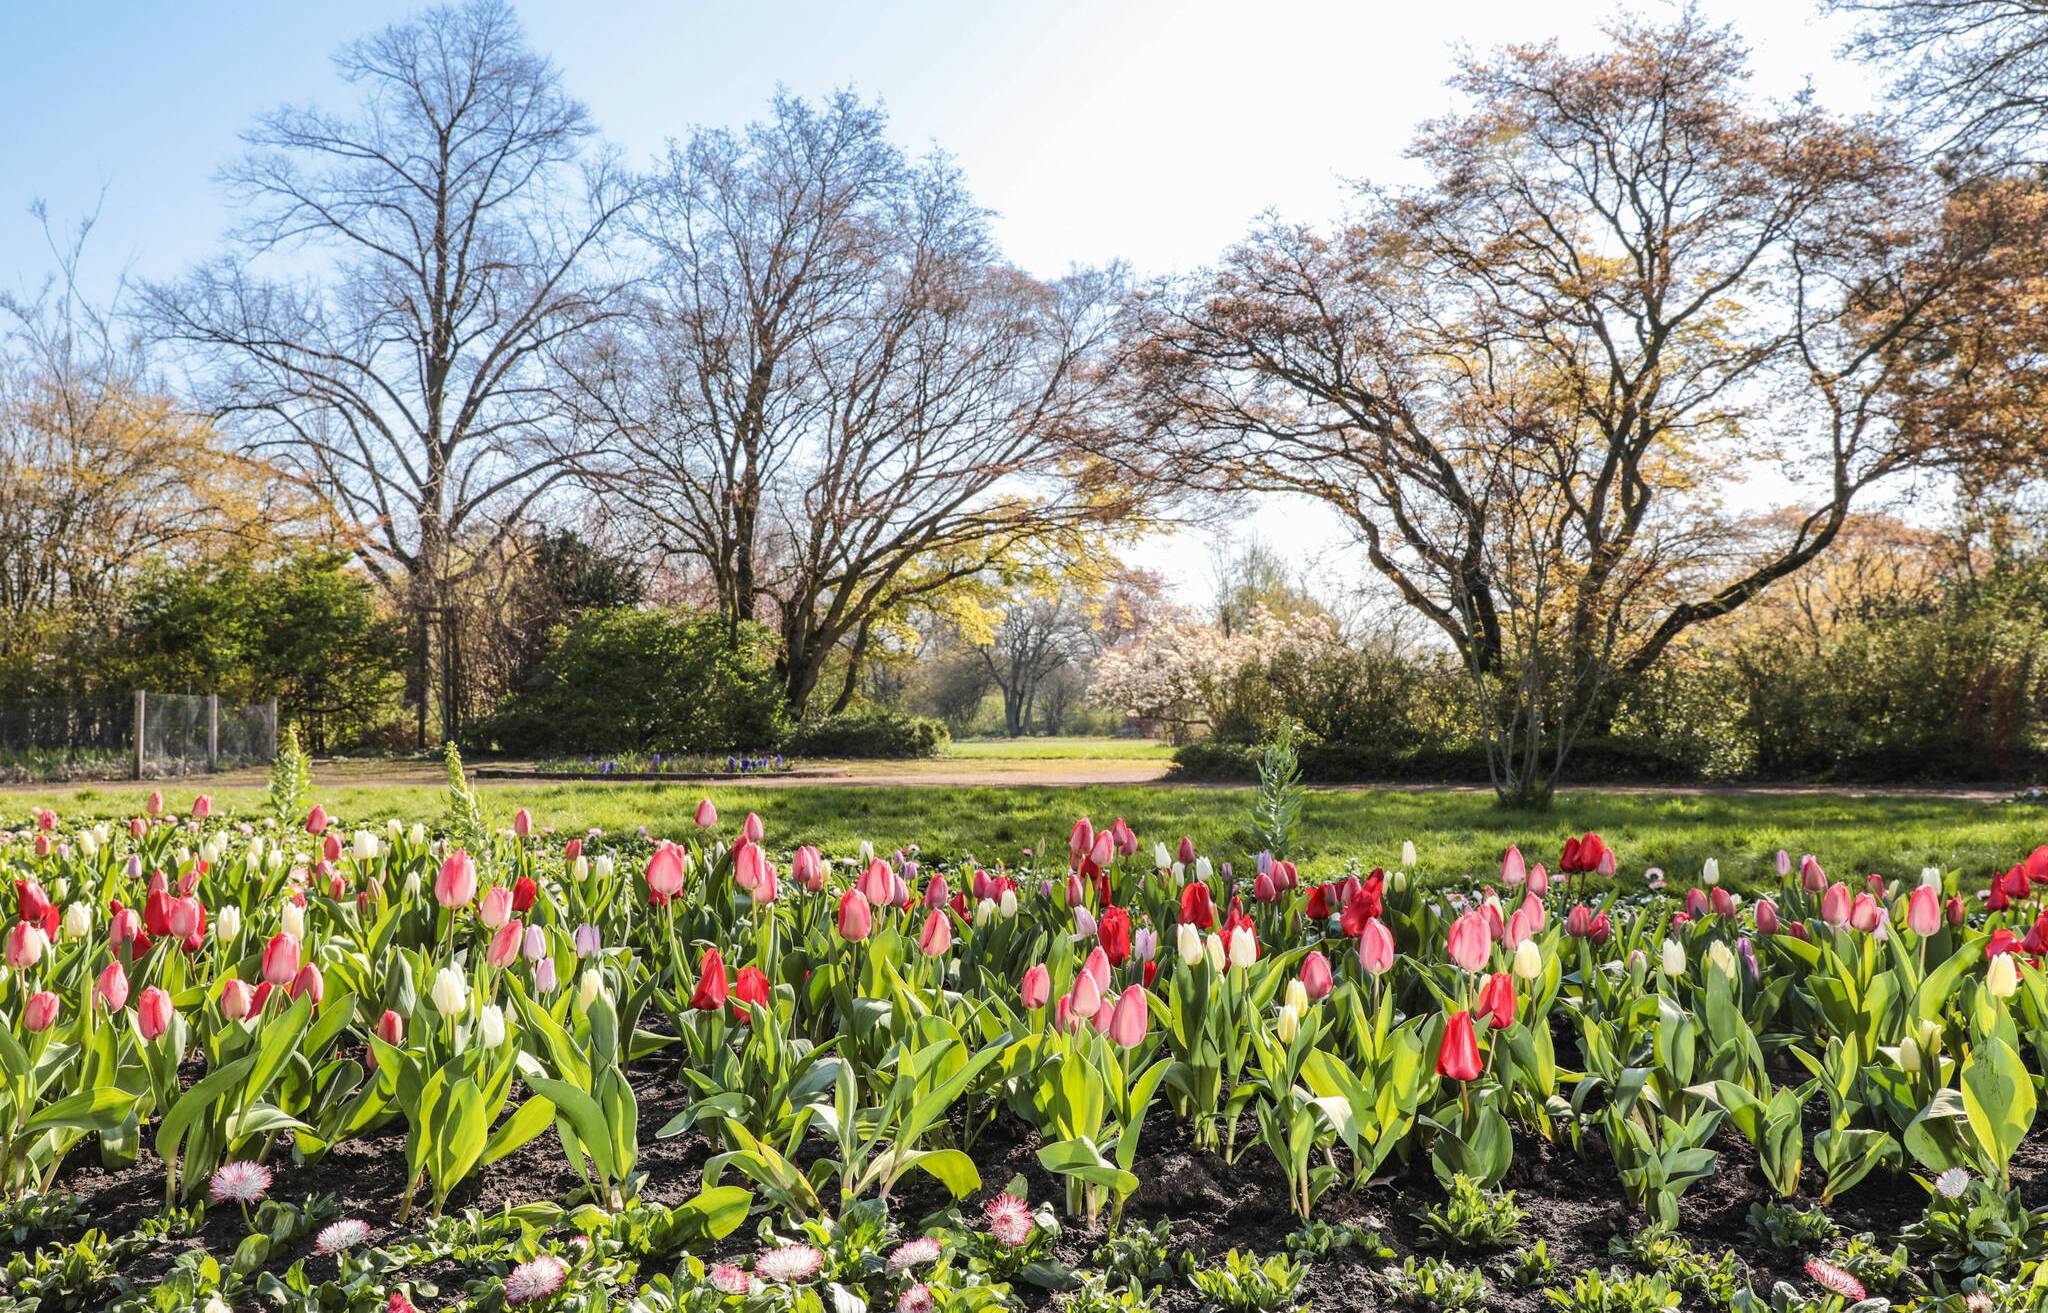  12.800 Tulpen ganz verschiedener Farben und Formen sorgen für eine bunte Blütenpracht im Nordpark. 